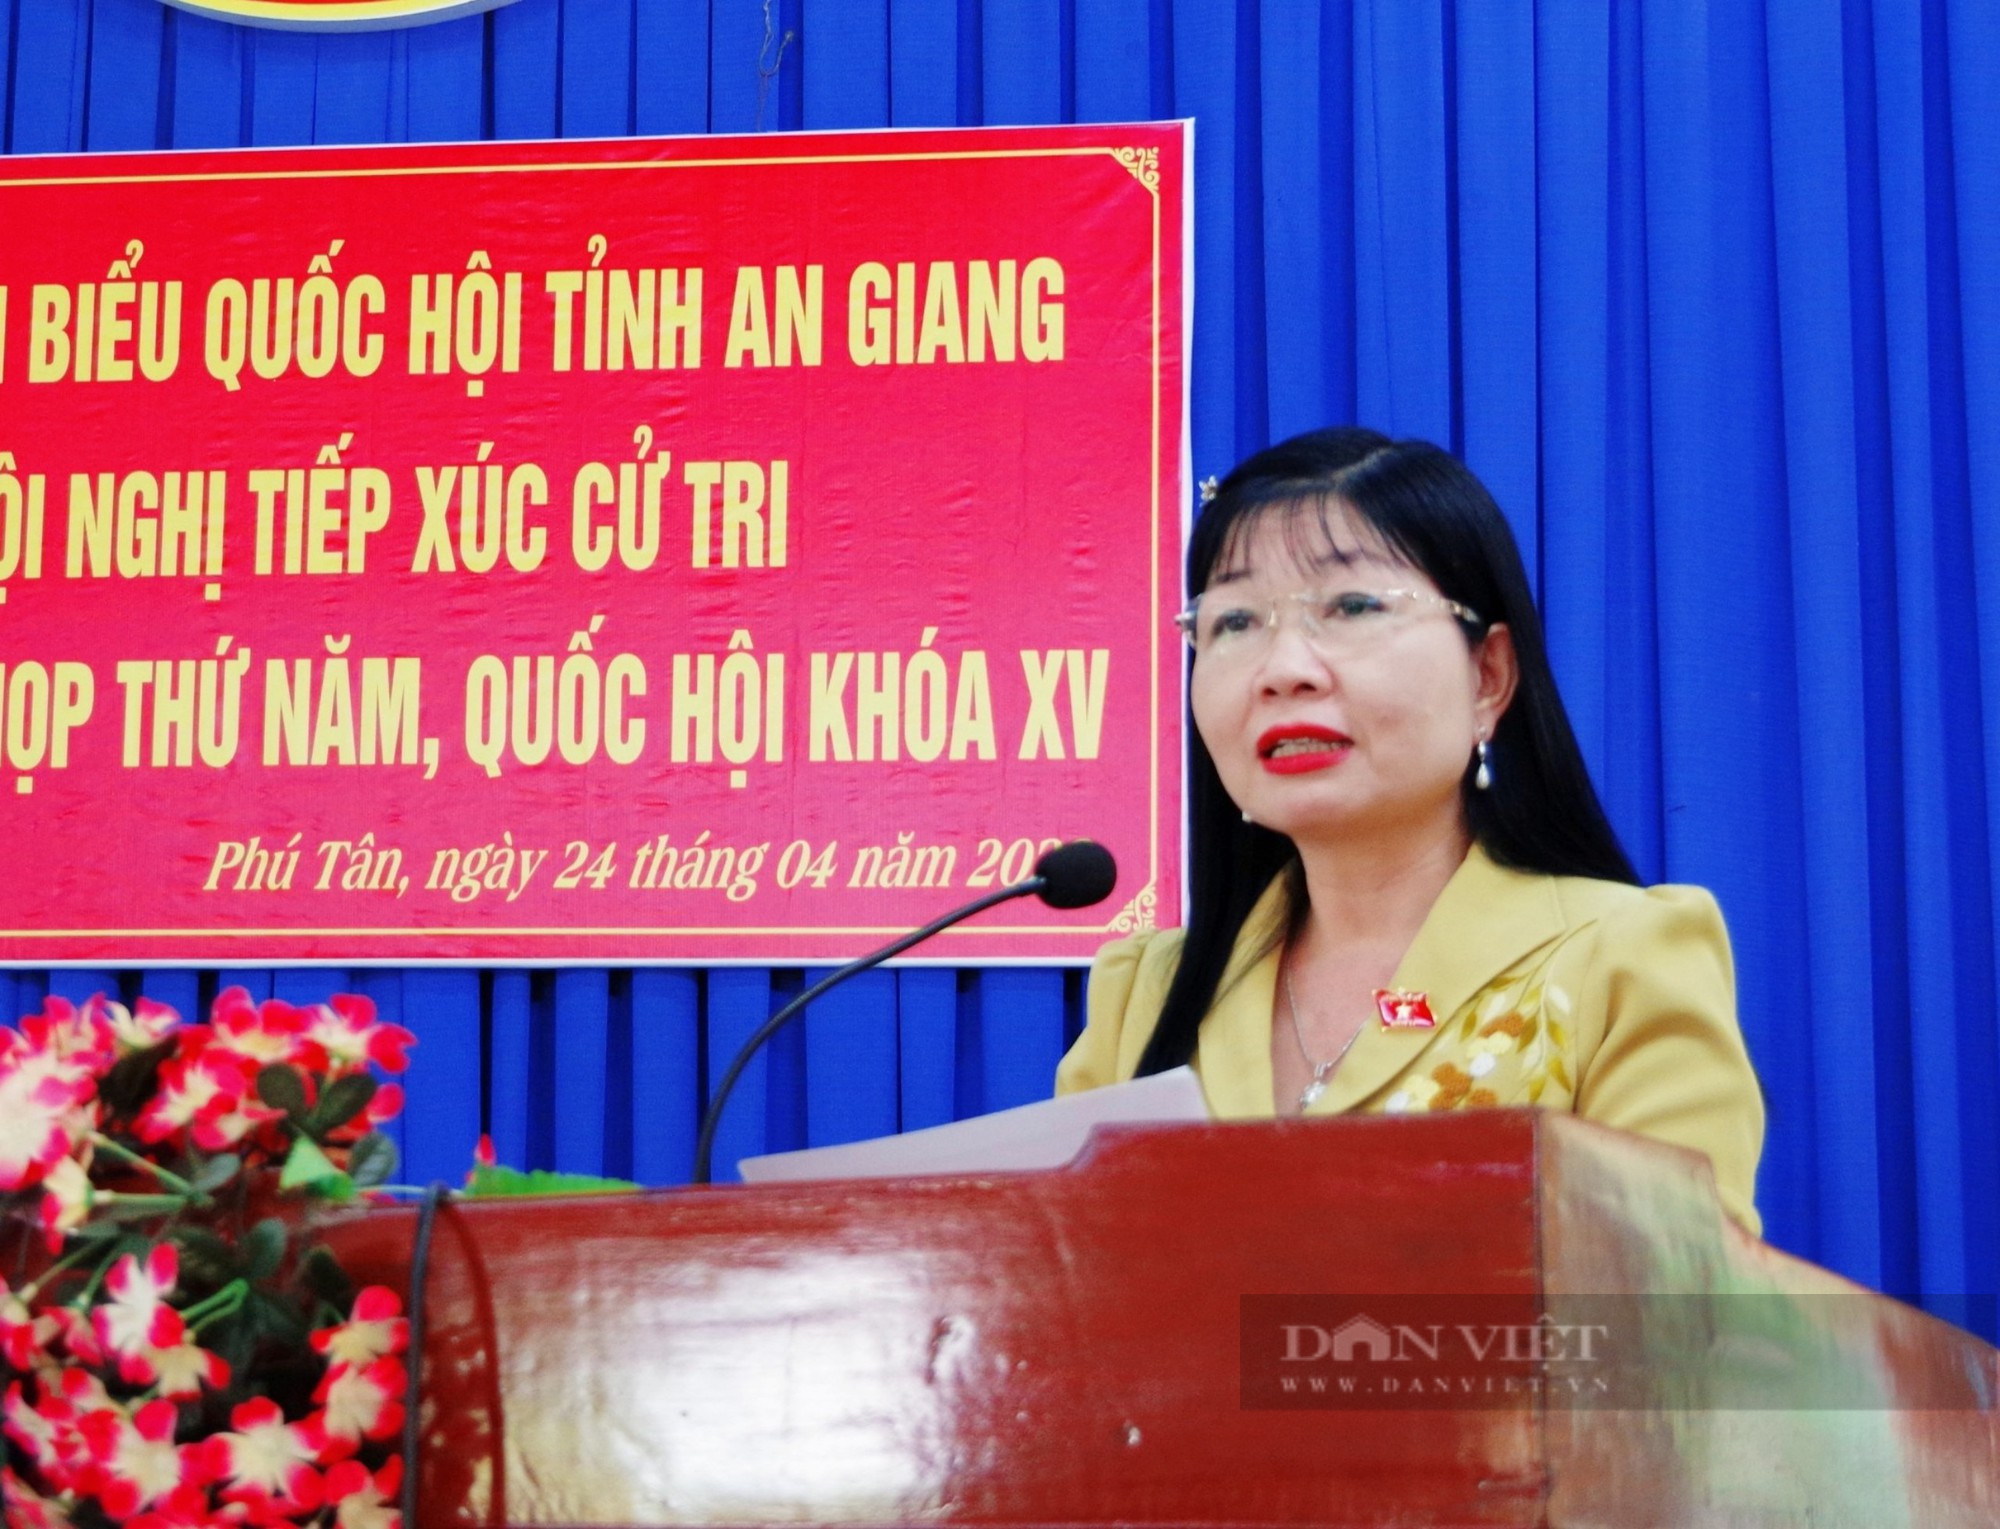 Chủ tịch Hội NDVN và đoàn đại biểu Quốc hội tỉnh An Giang tiếp xúc cử tri huyện Phú Tân - Ảnh 3.